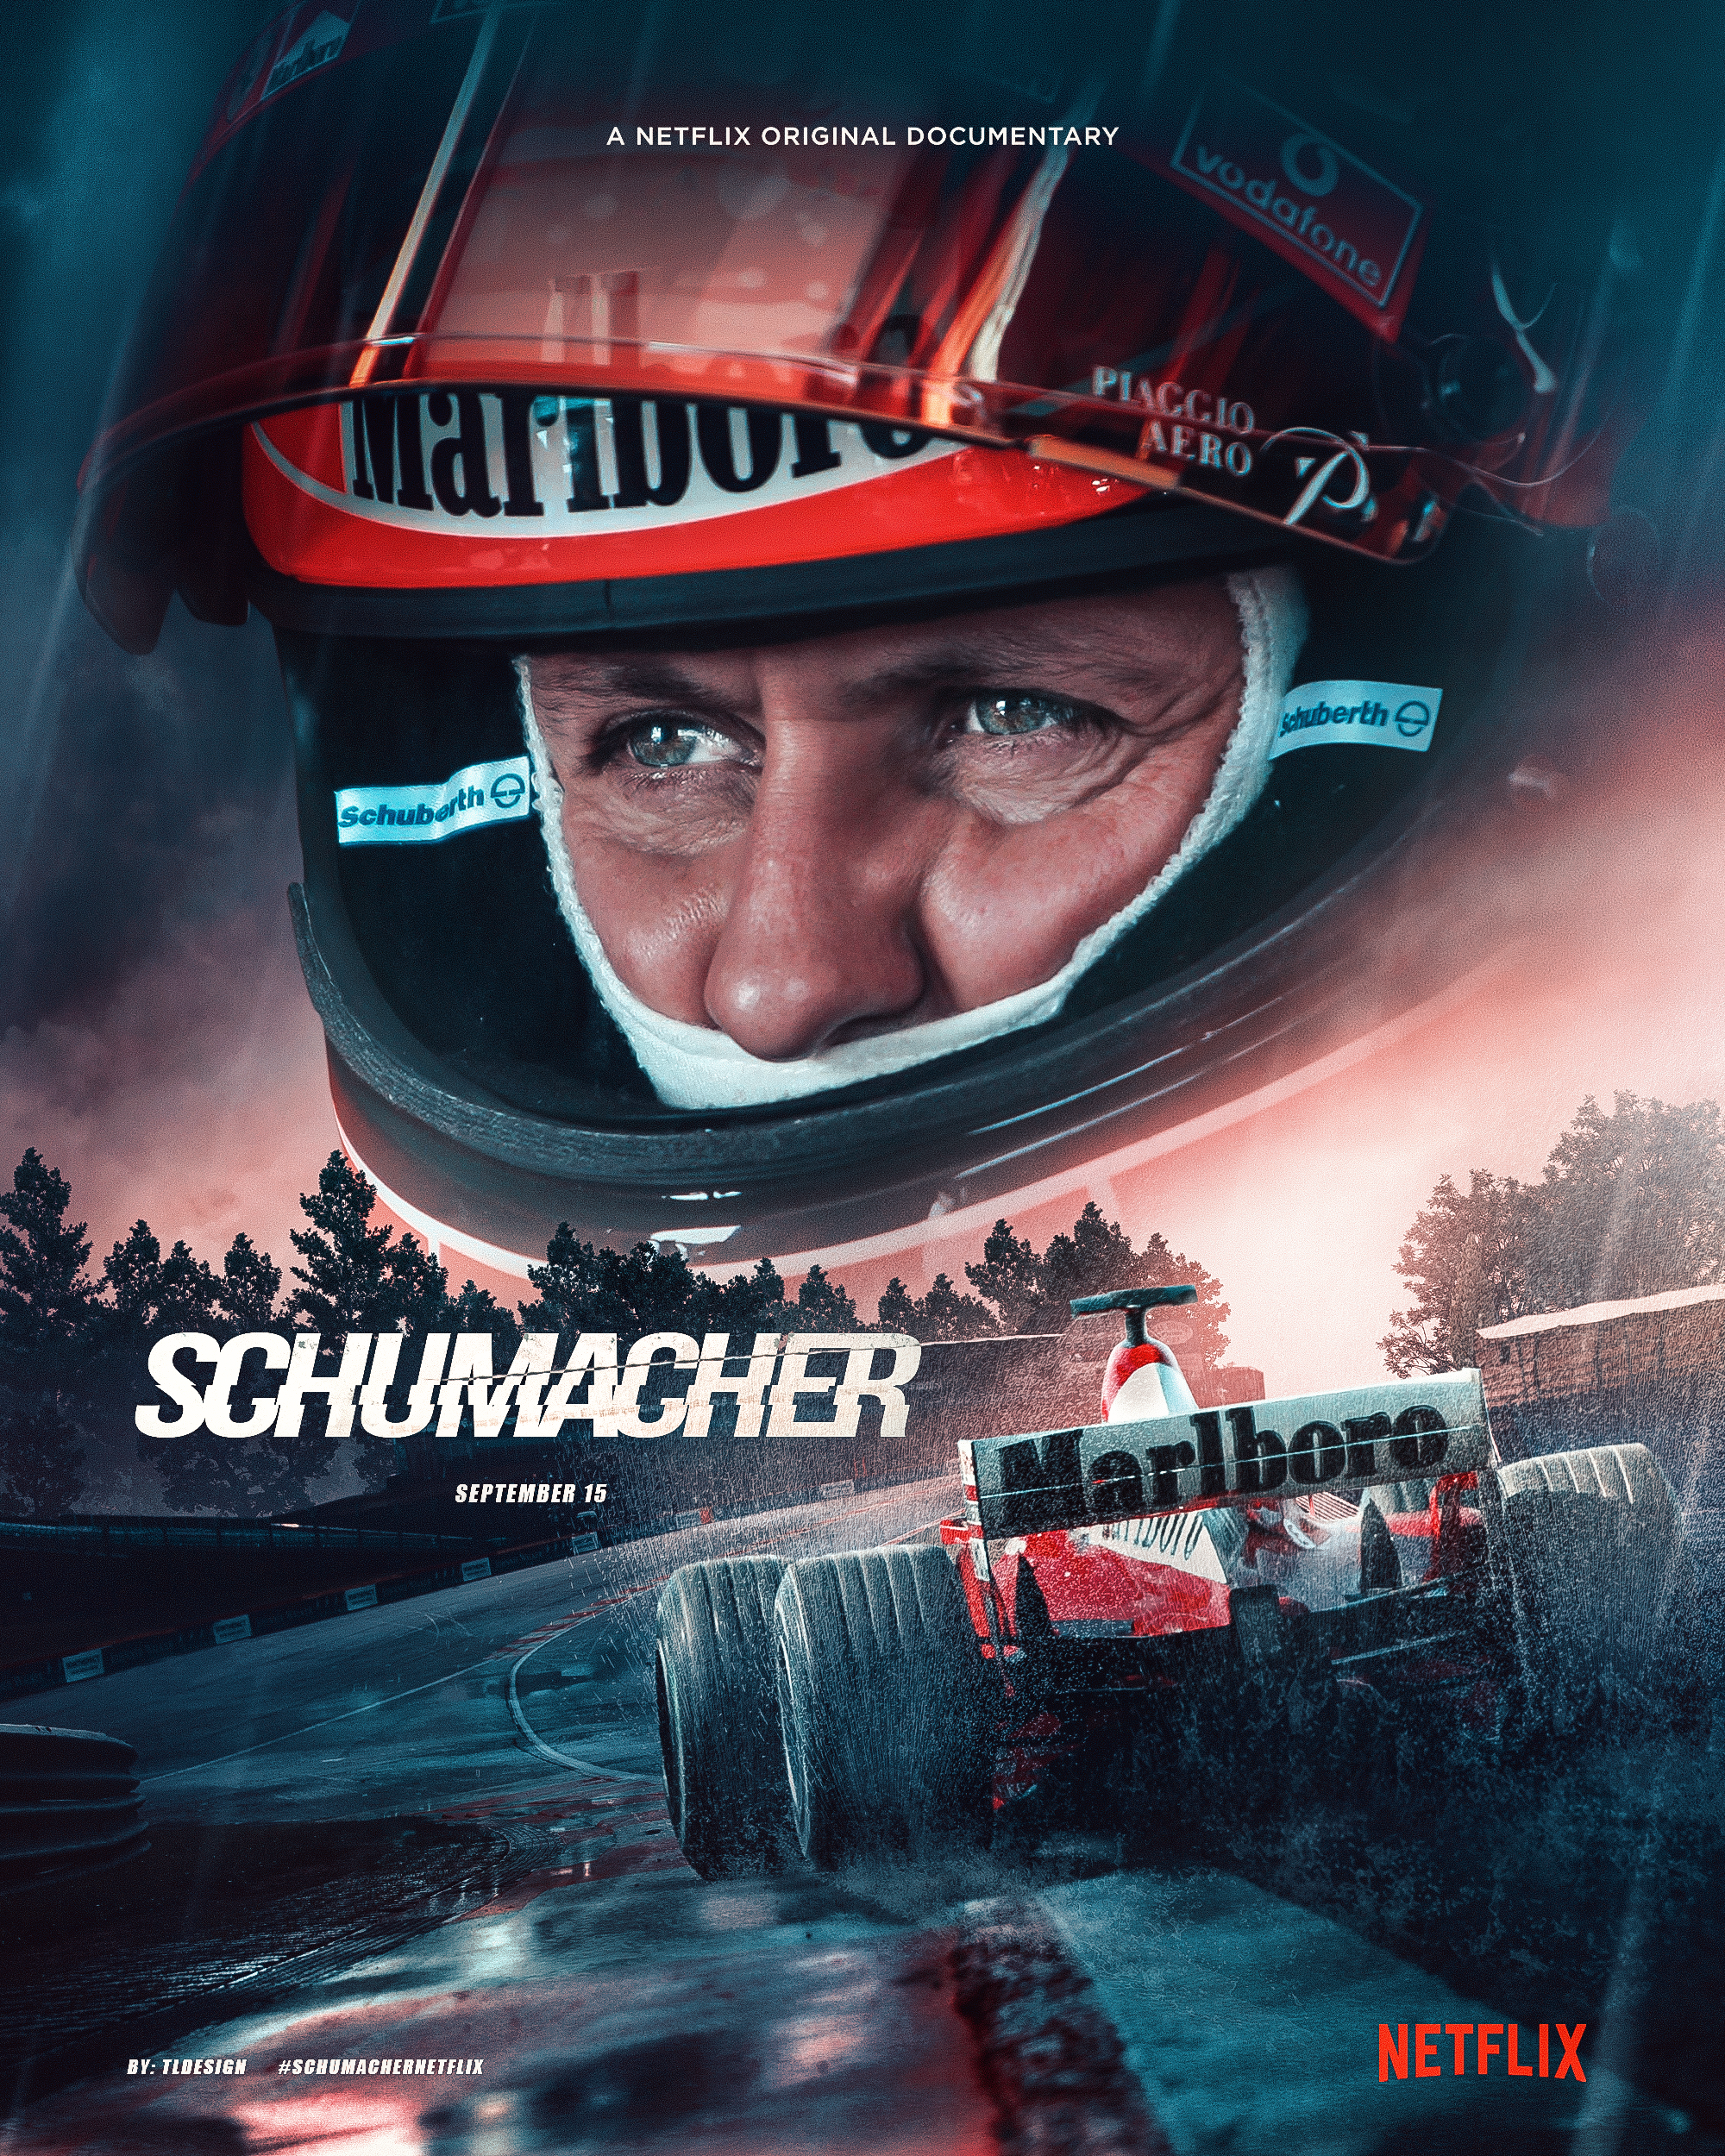 Michael Schumacher netflix documentary poster by TLDesignn on DeviantArt